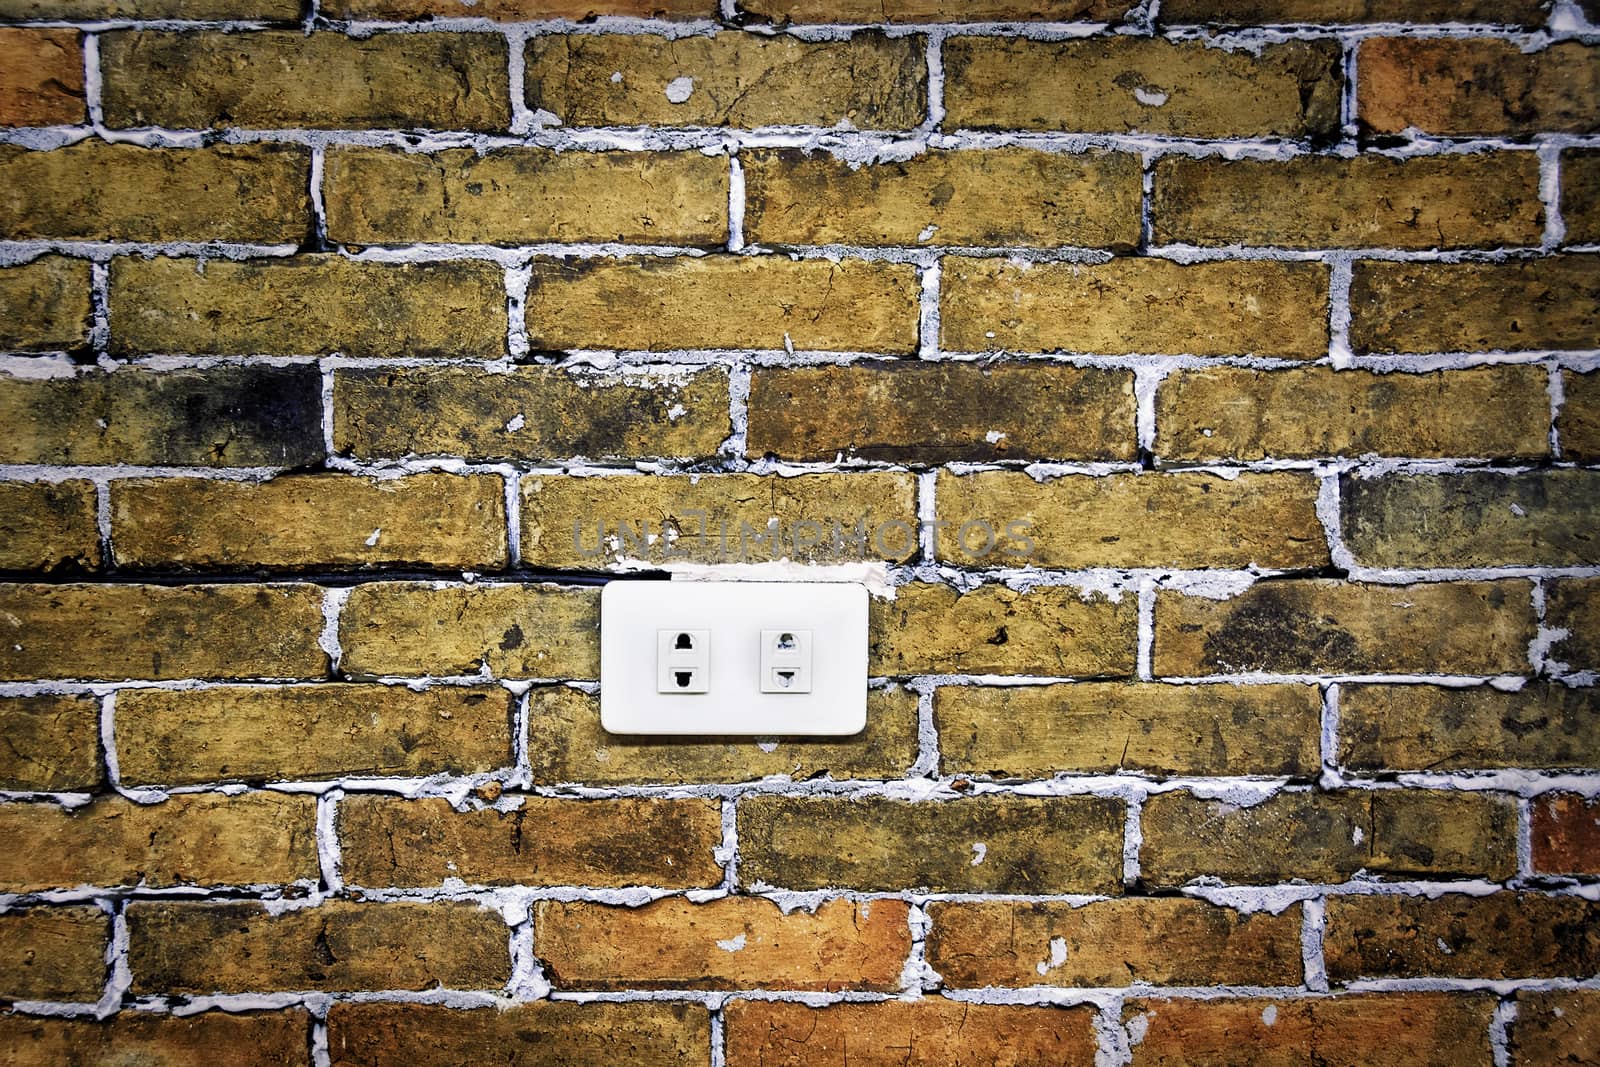 Brick Wall Electric Socket by tonyoquias